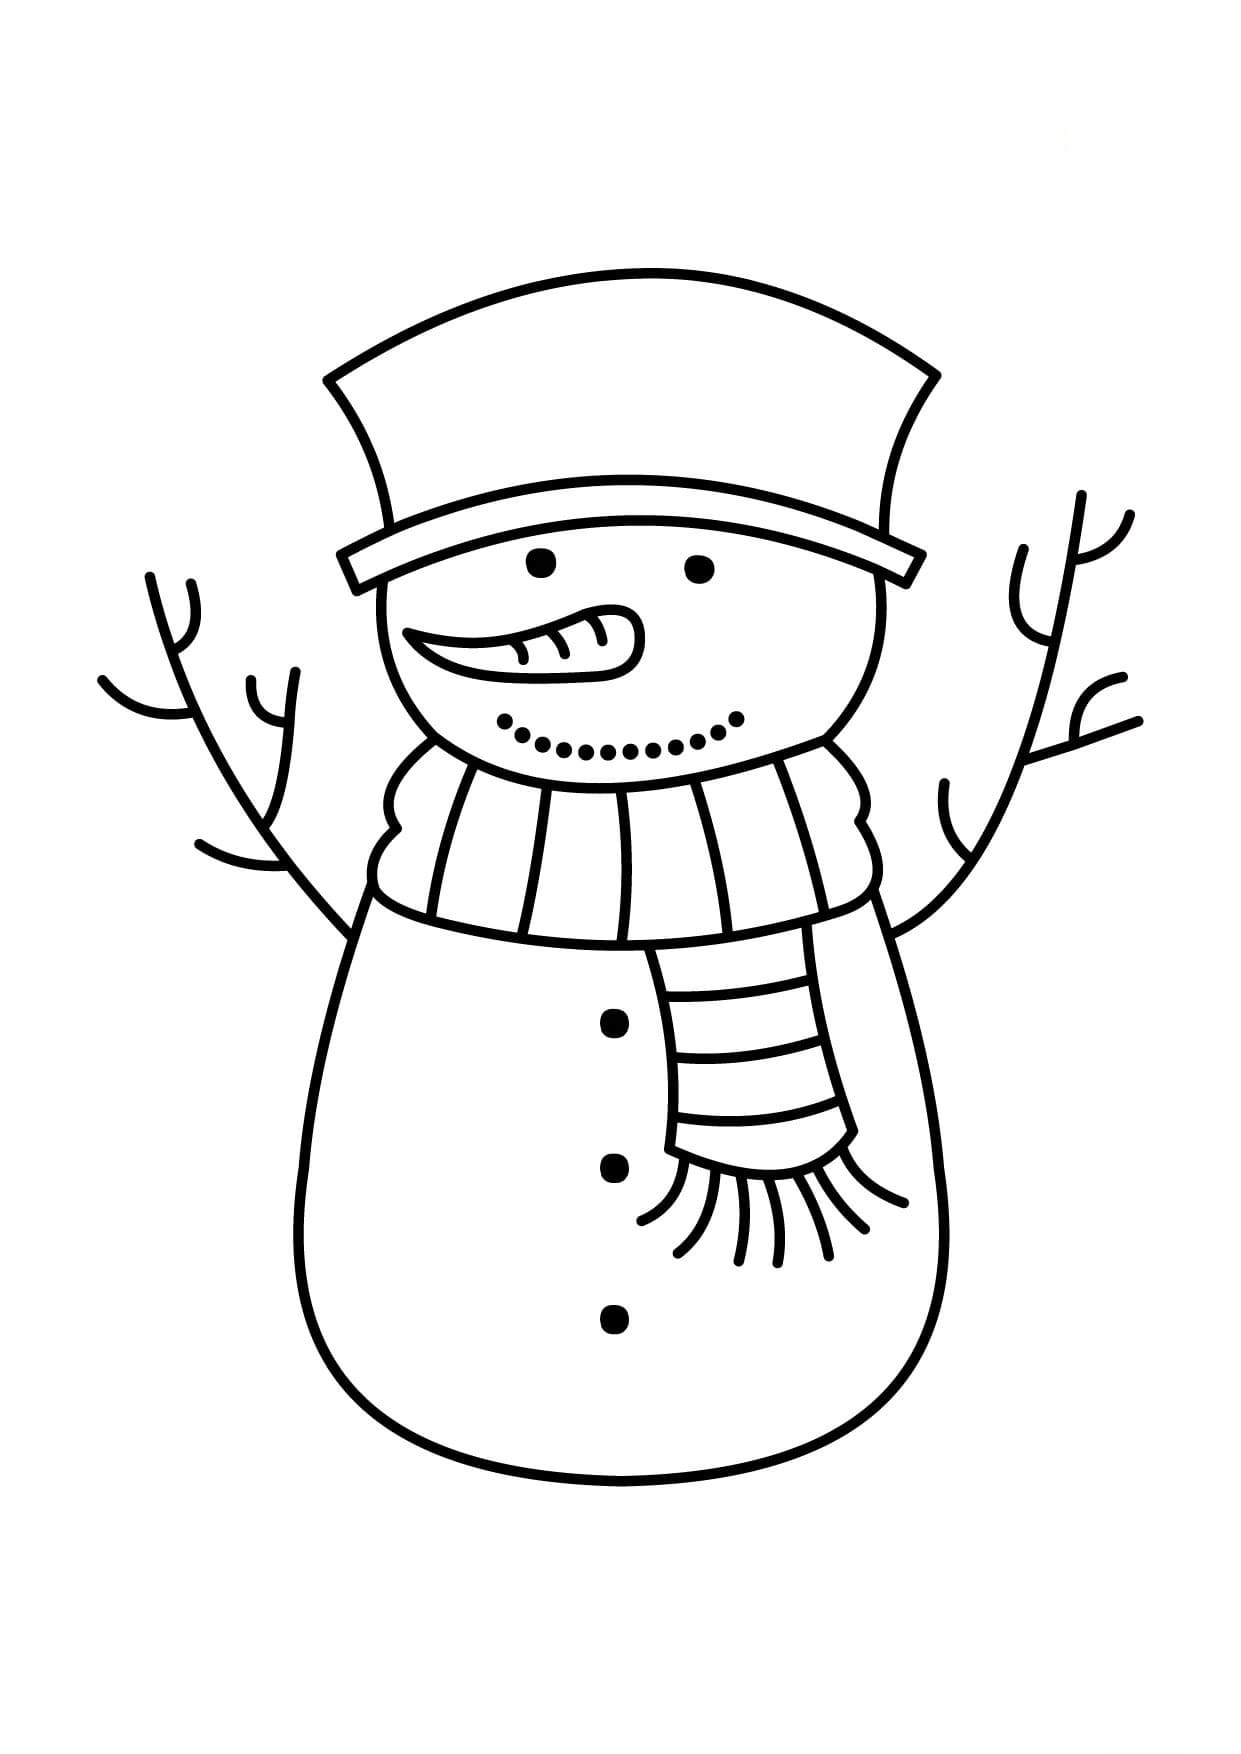 Coloriage Bonhomme de neige - 100 images pour une impression gratuite